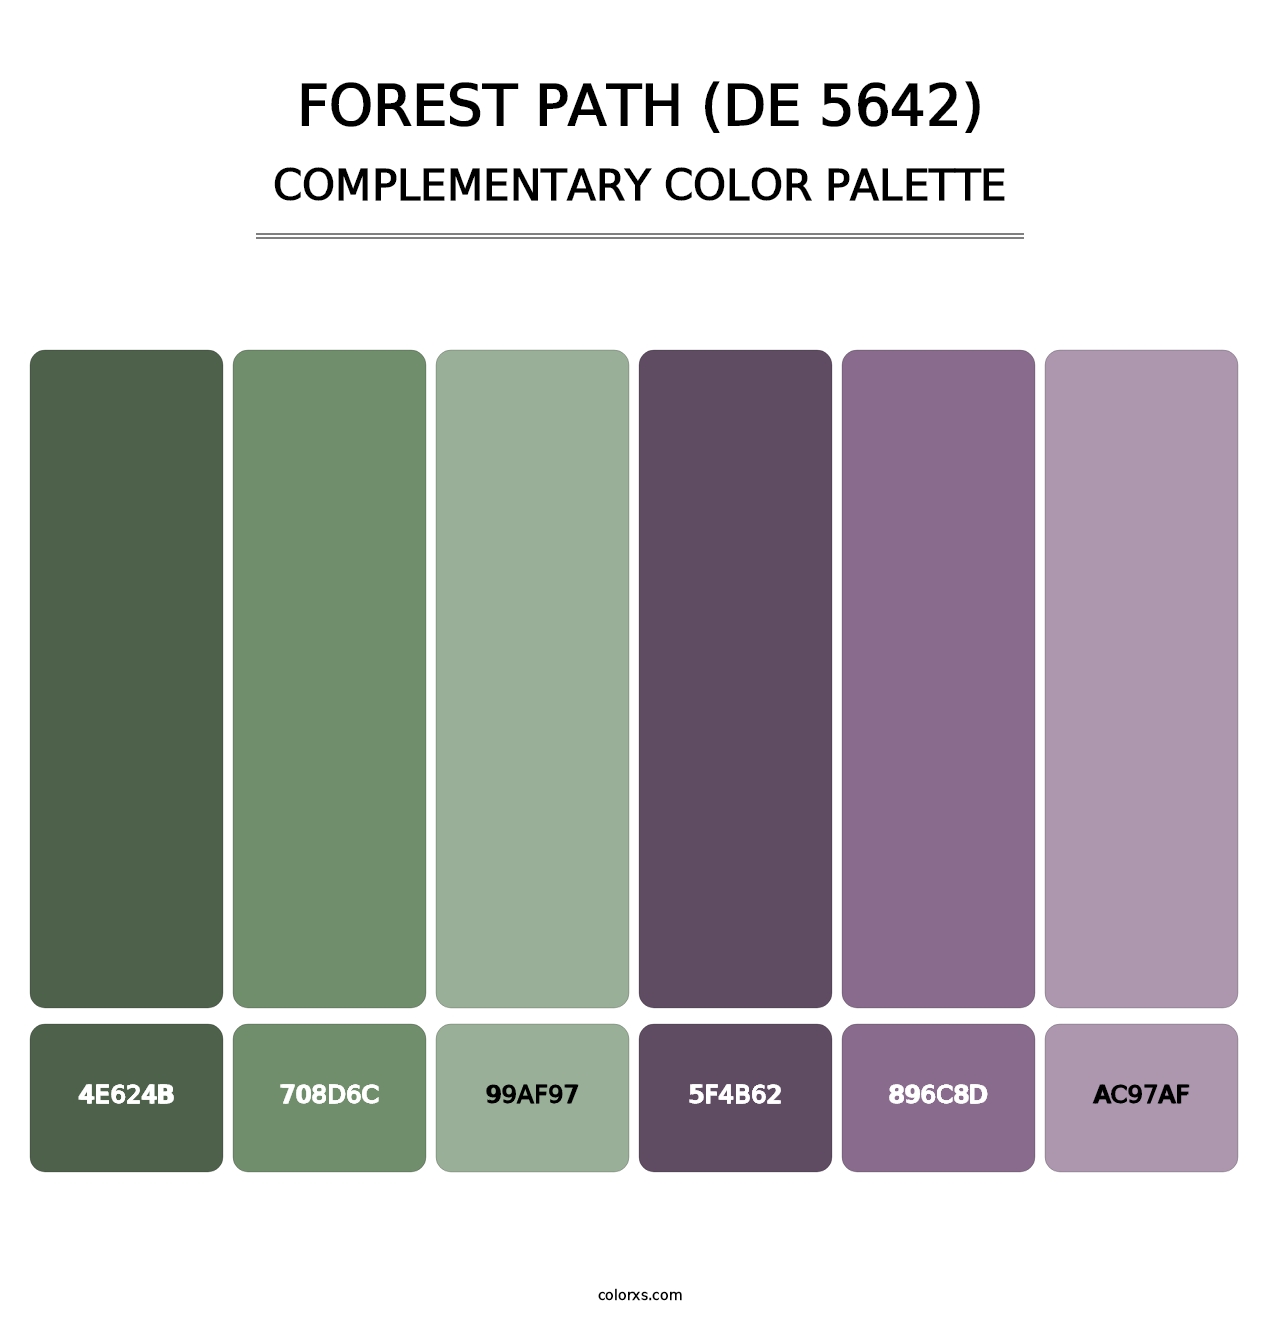 Forest Path (DE 5642) - Complementary Color Palette